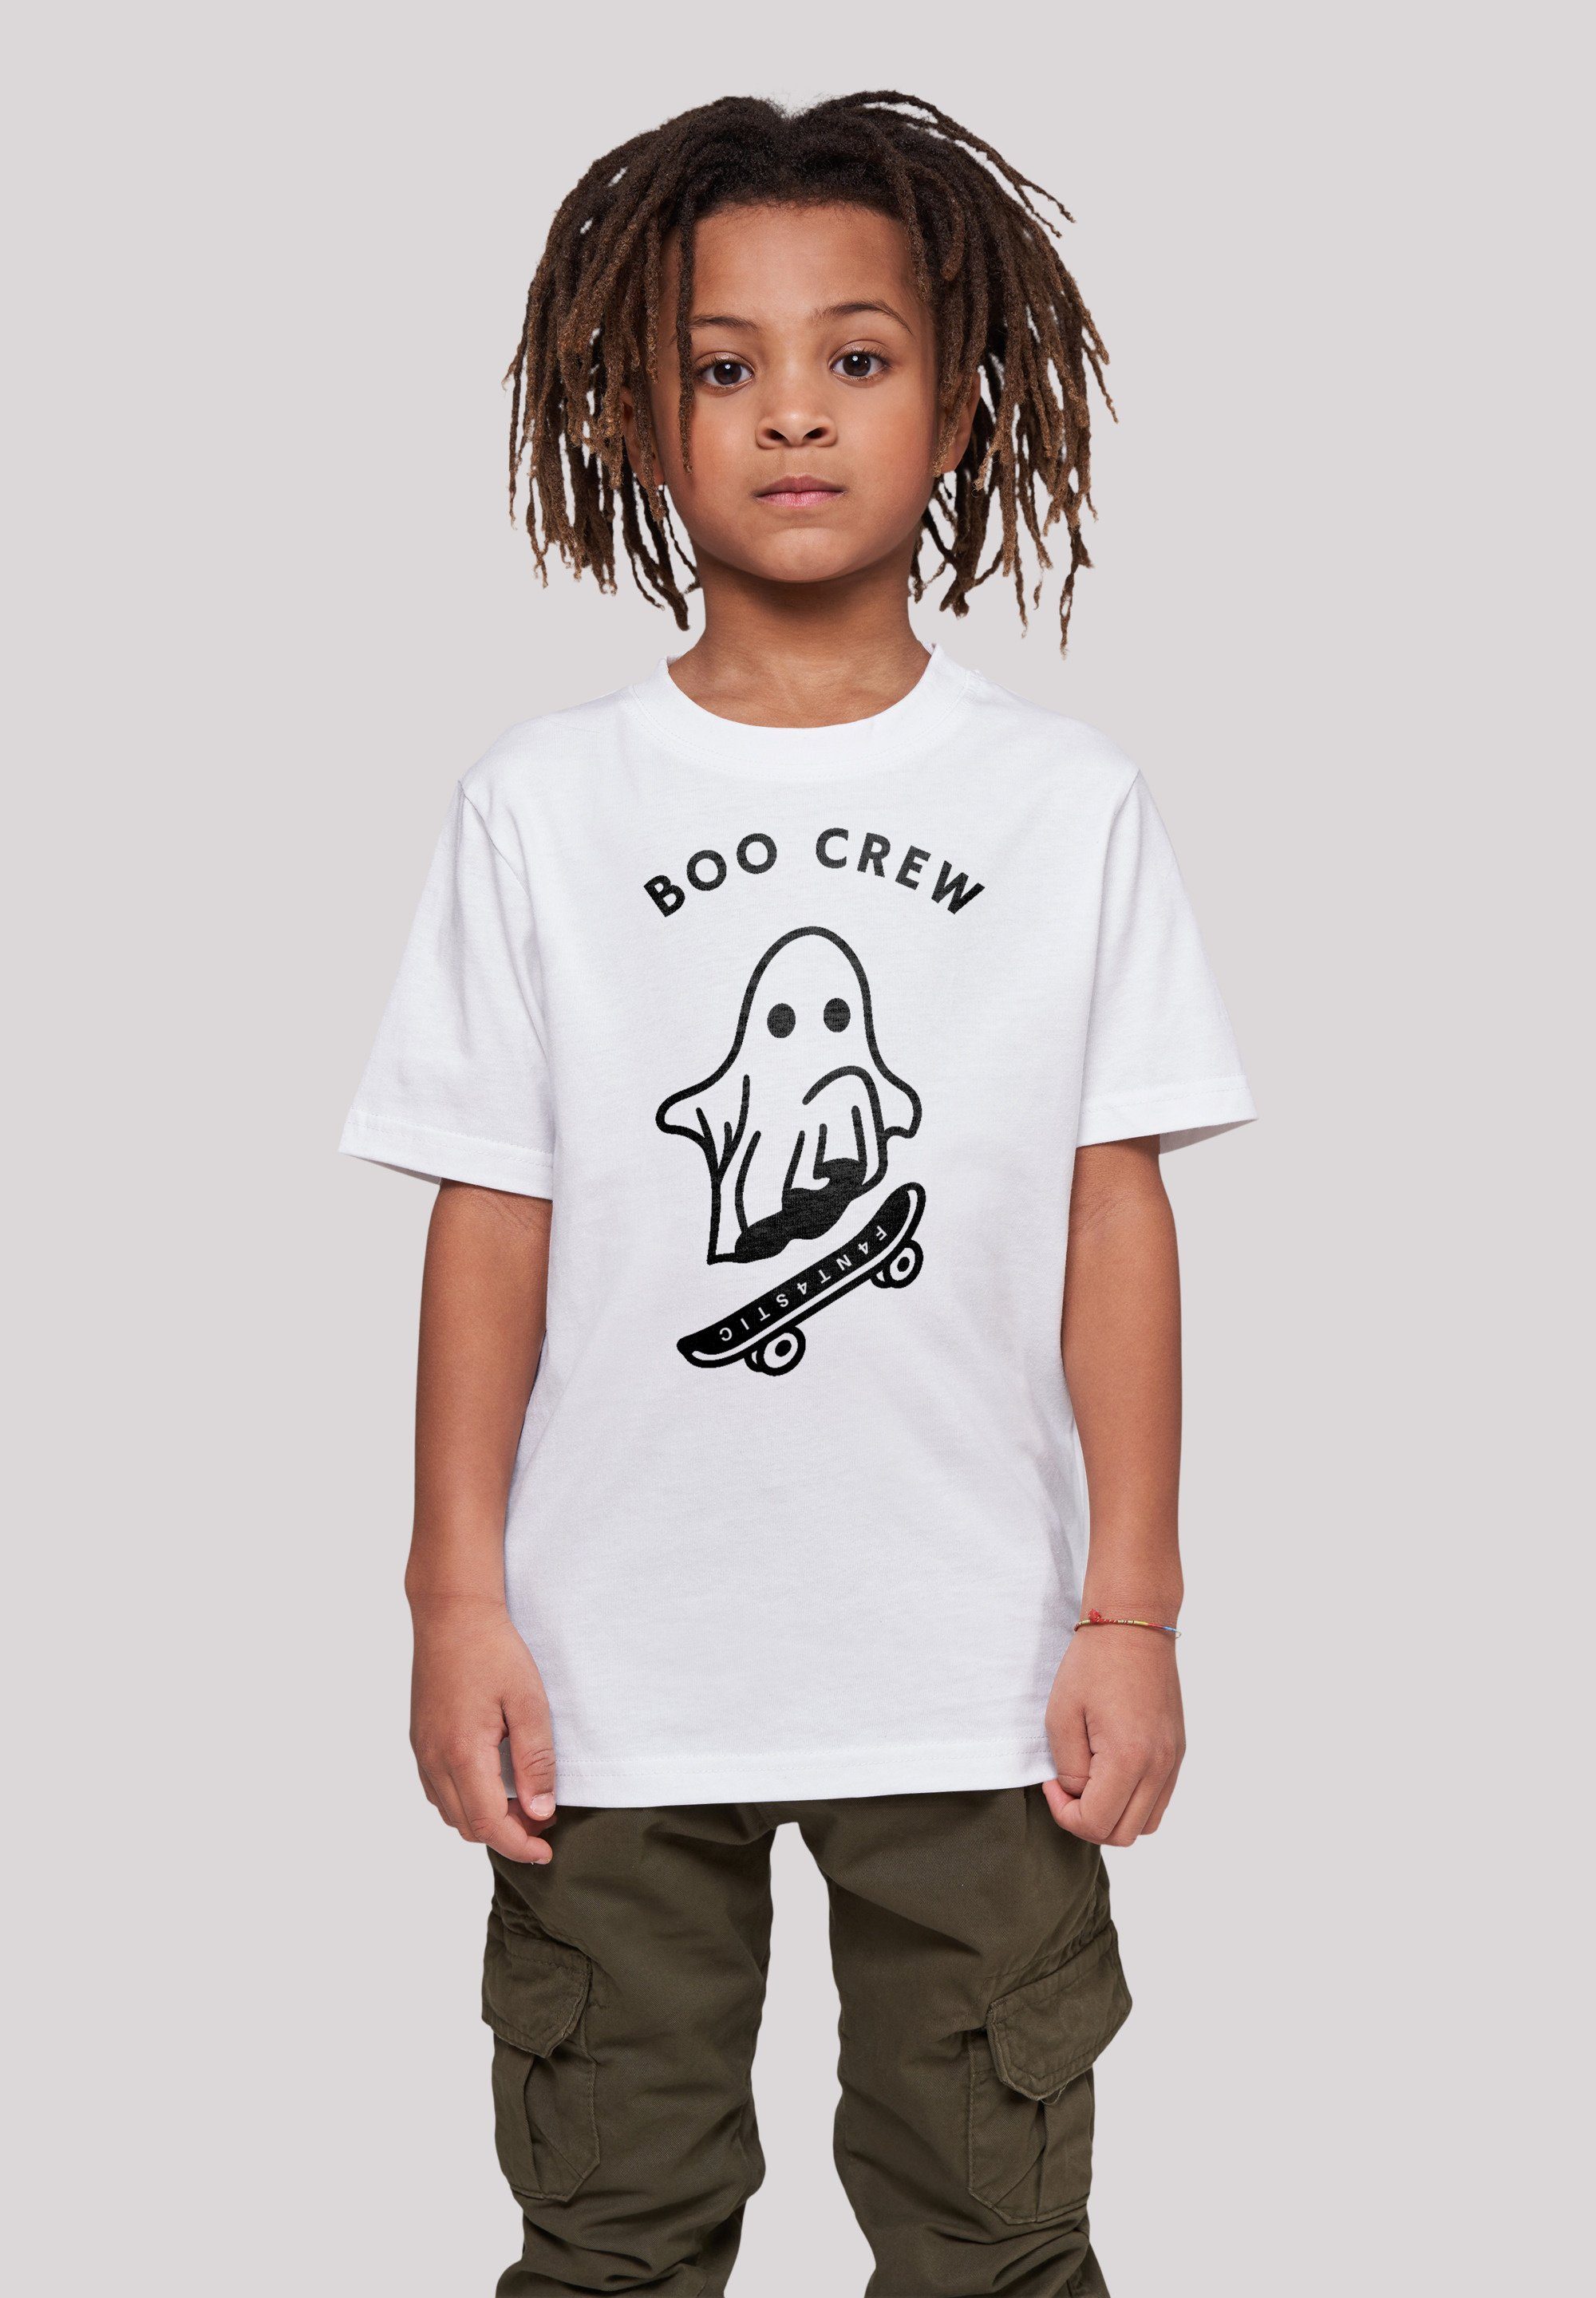 Kinder Lässiges T-Shirt Crew T-Shirt Print, F4NT4STIC Boo Halloween